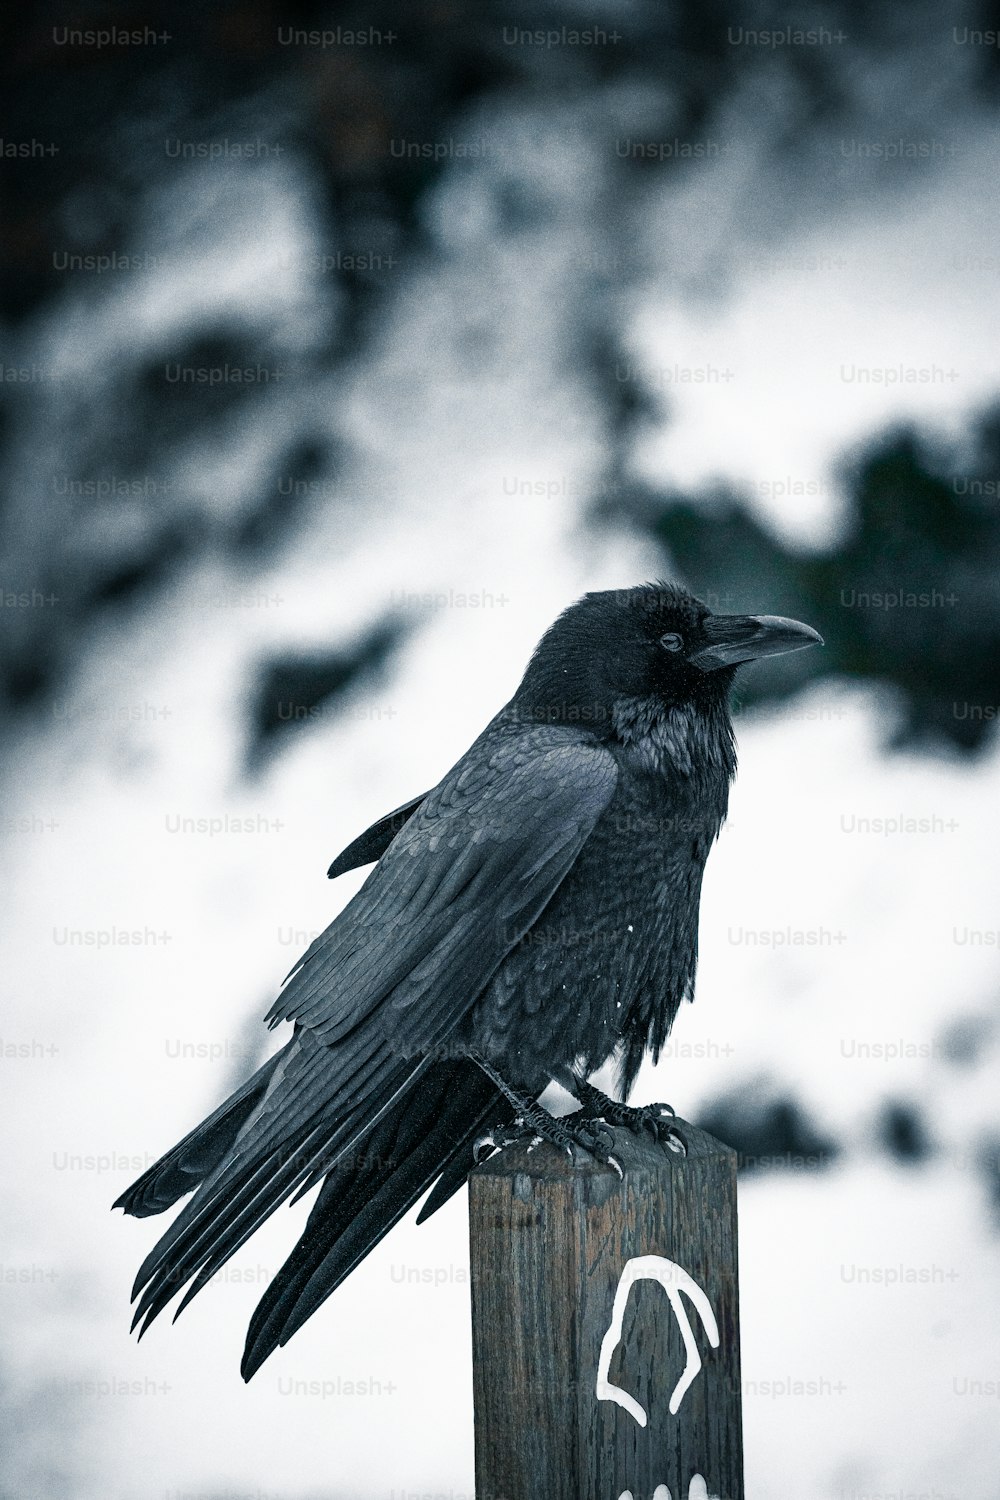 나무 기둥 위에 앉아 있는 검은 새